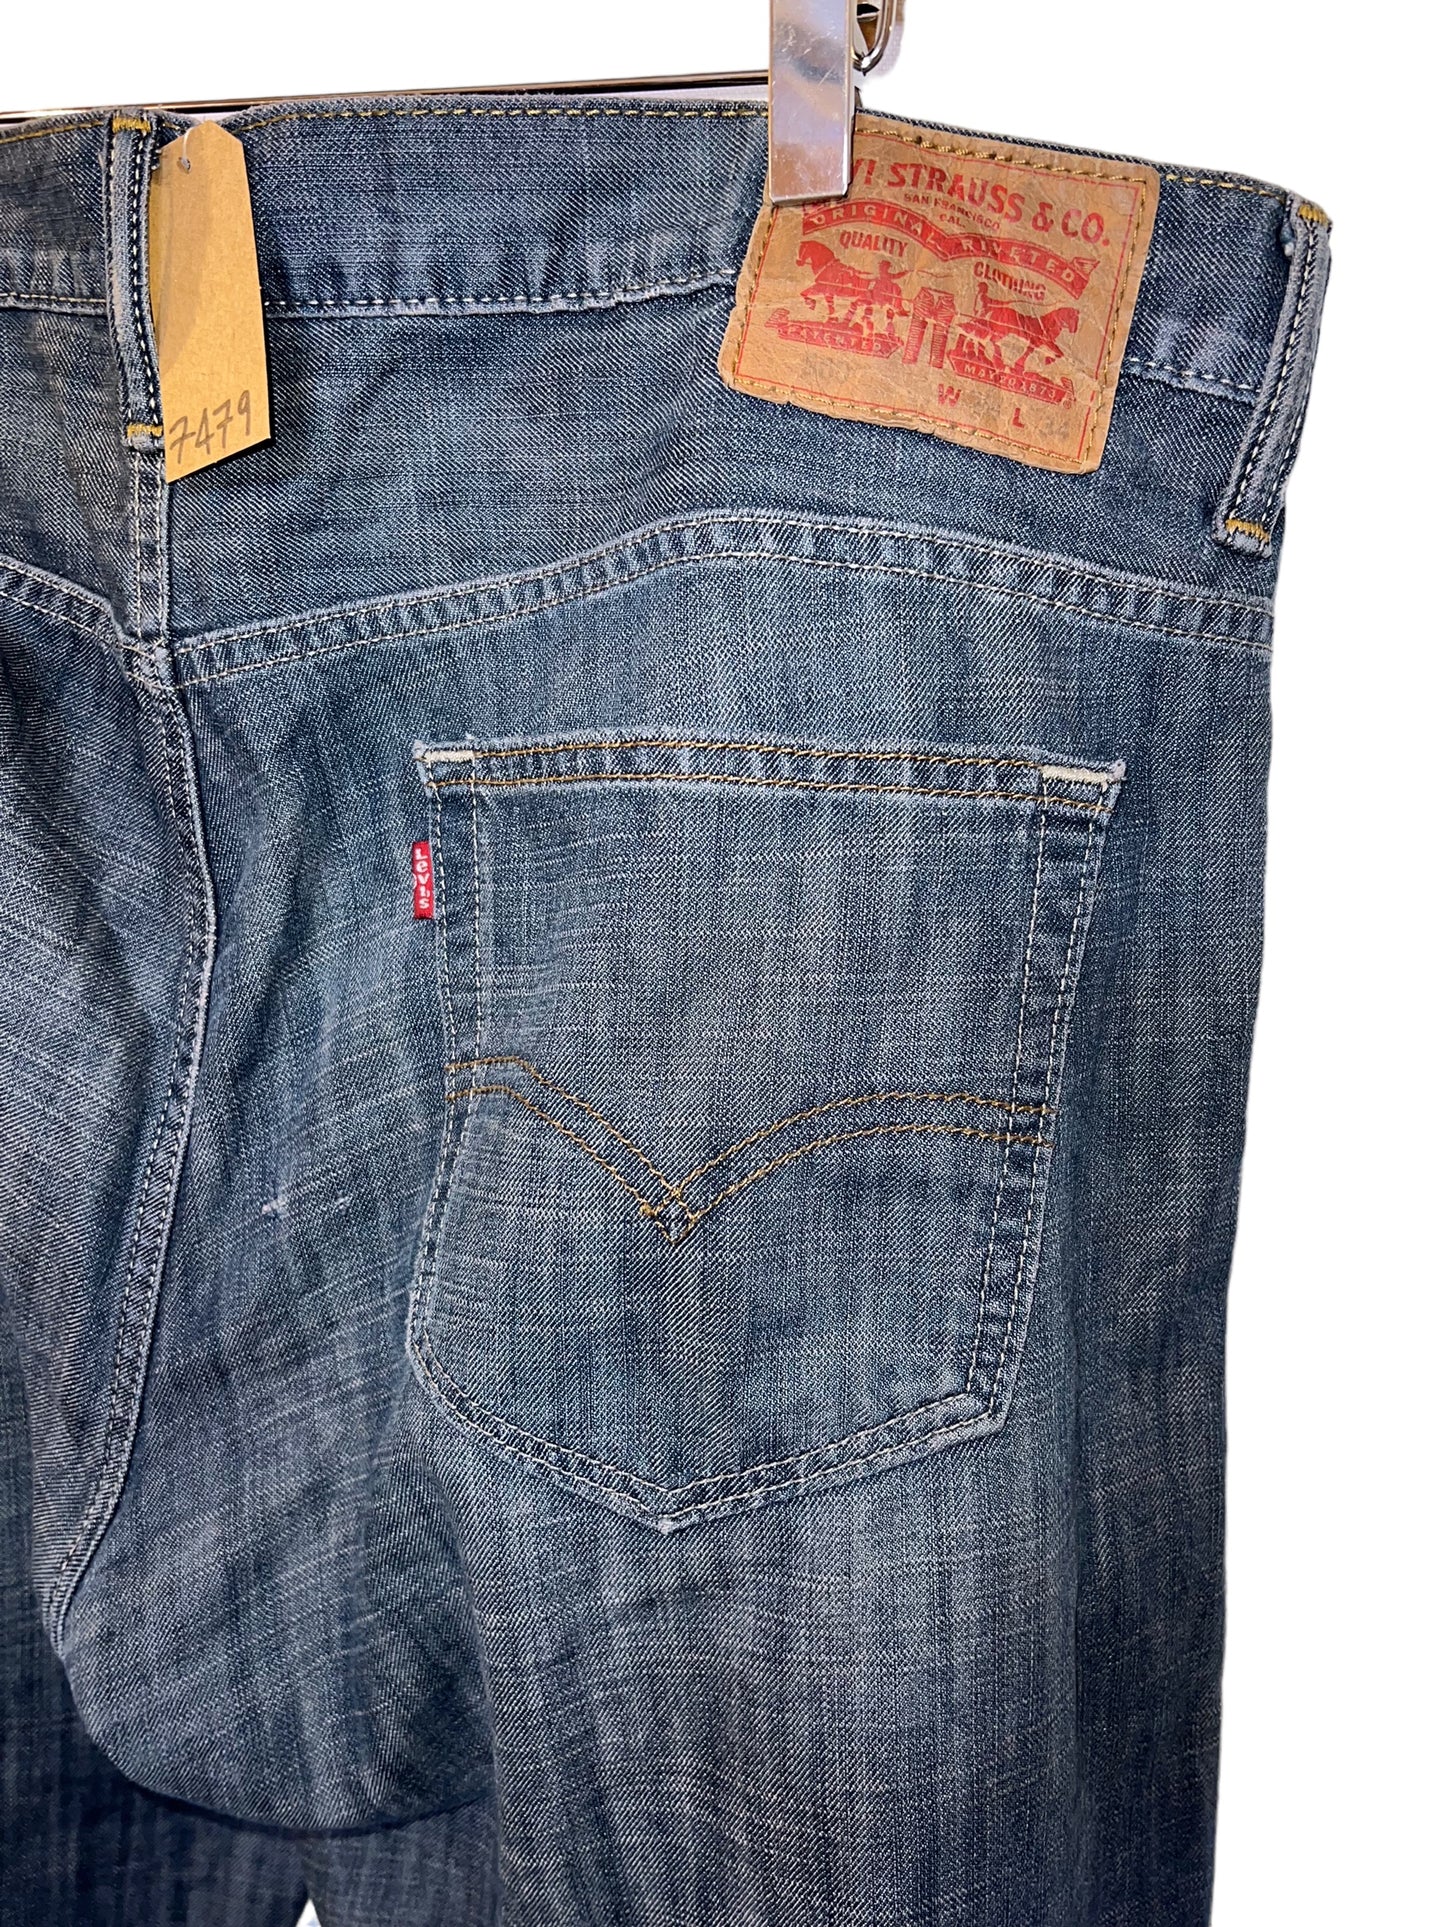 Levi 560 jeans (38x34)